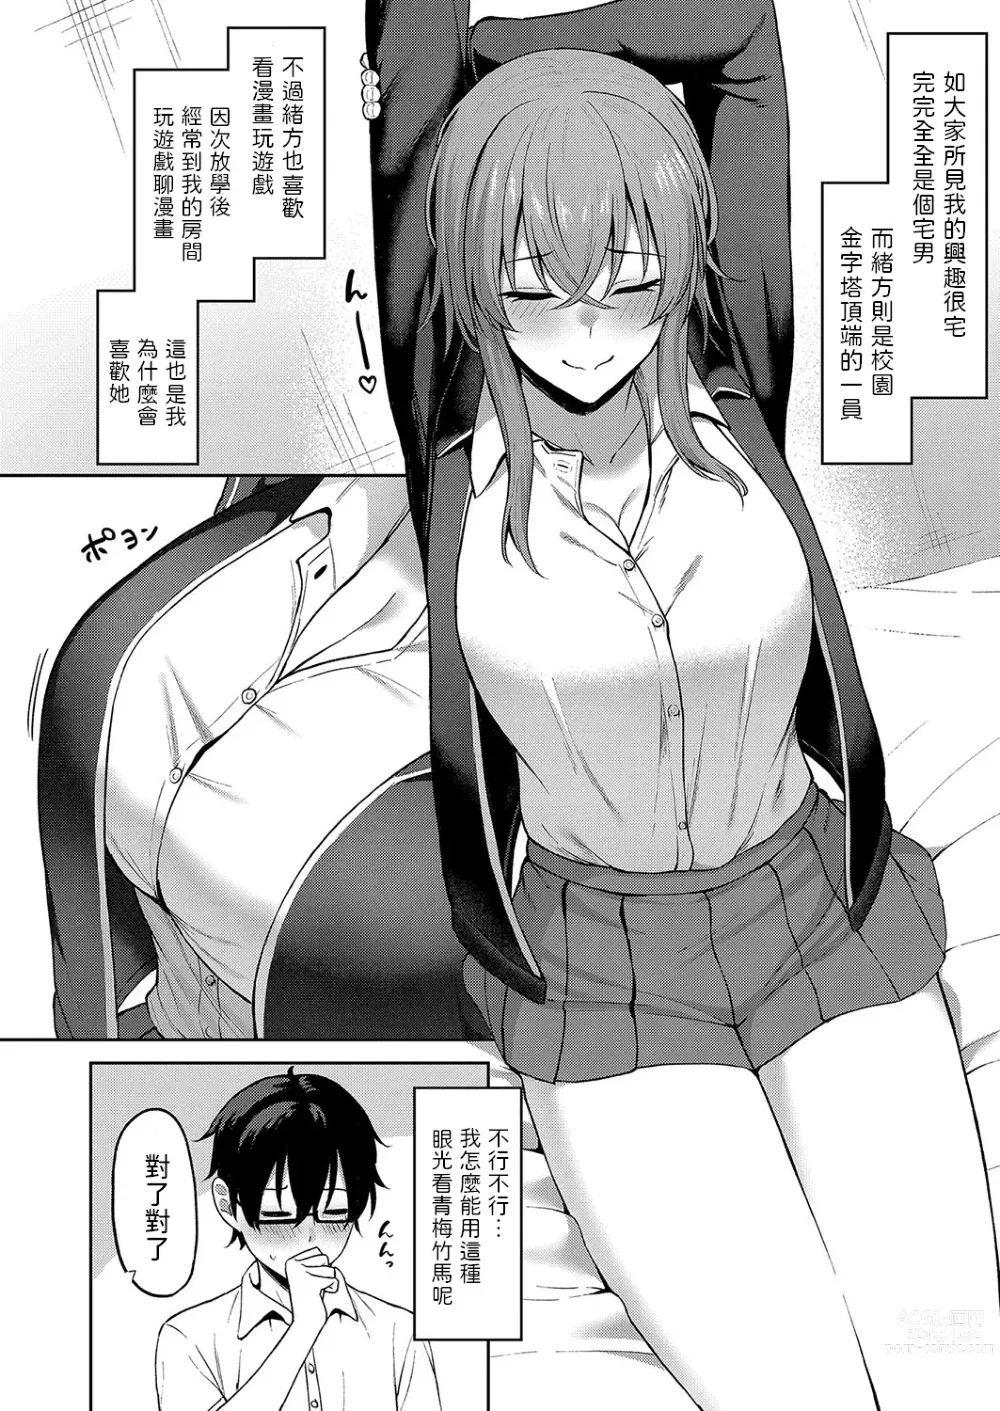 Page 2 of manga Kokuhaku wa Toutotsu ni